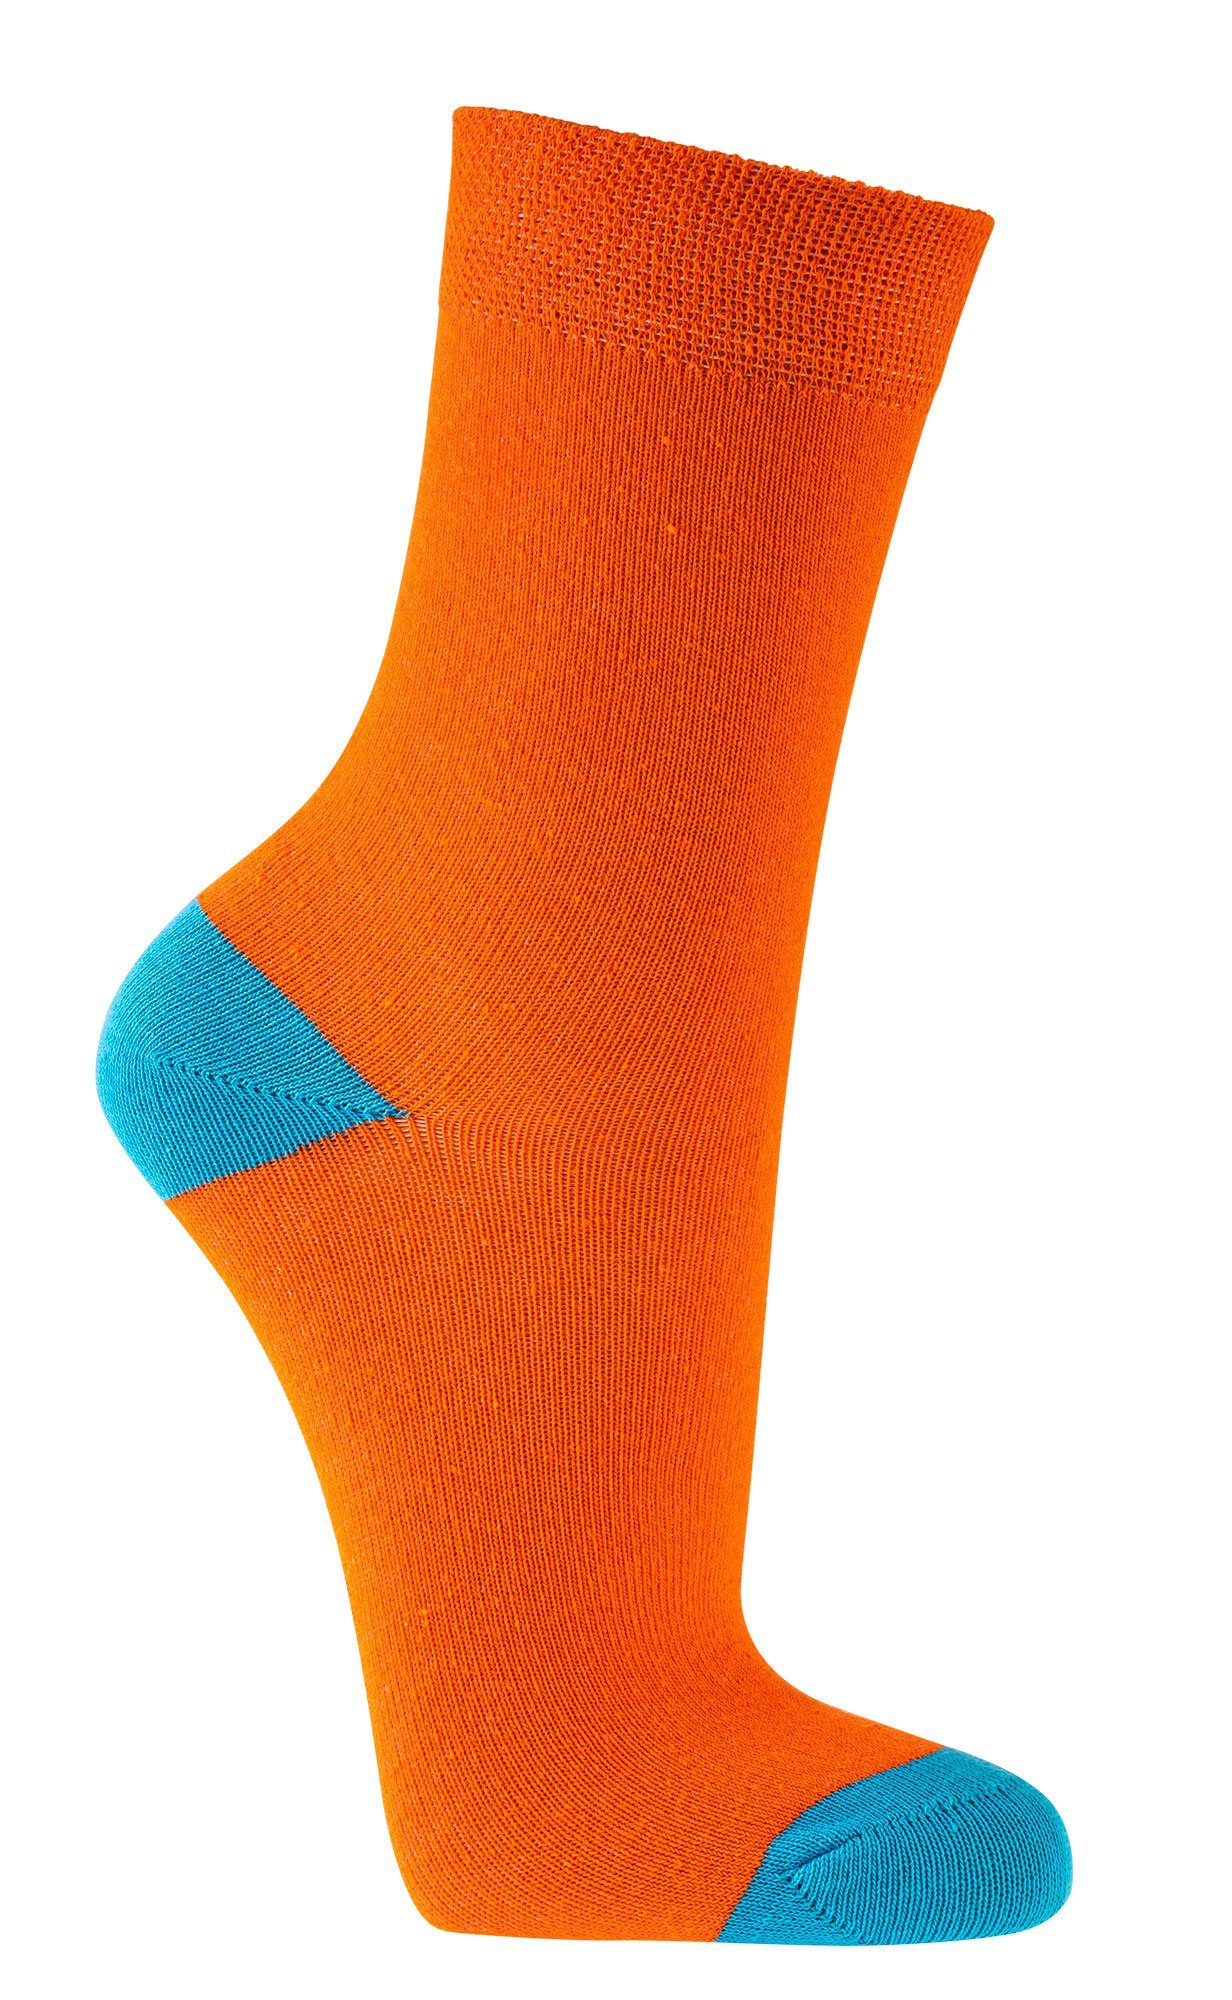 FussFreunde Socken 6 Paar Kinder Socken für Mädchen & Jungen, GUTE LAUNE FARBEN Orange